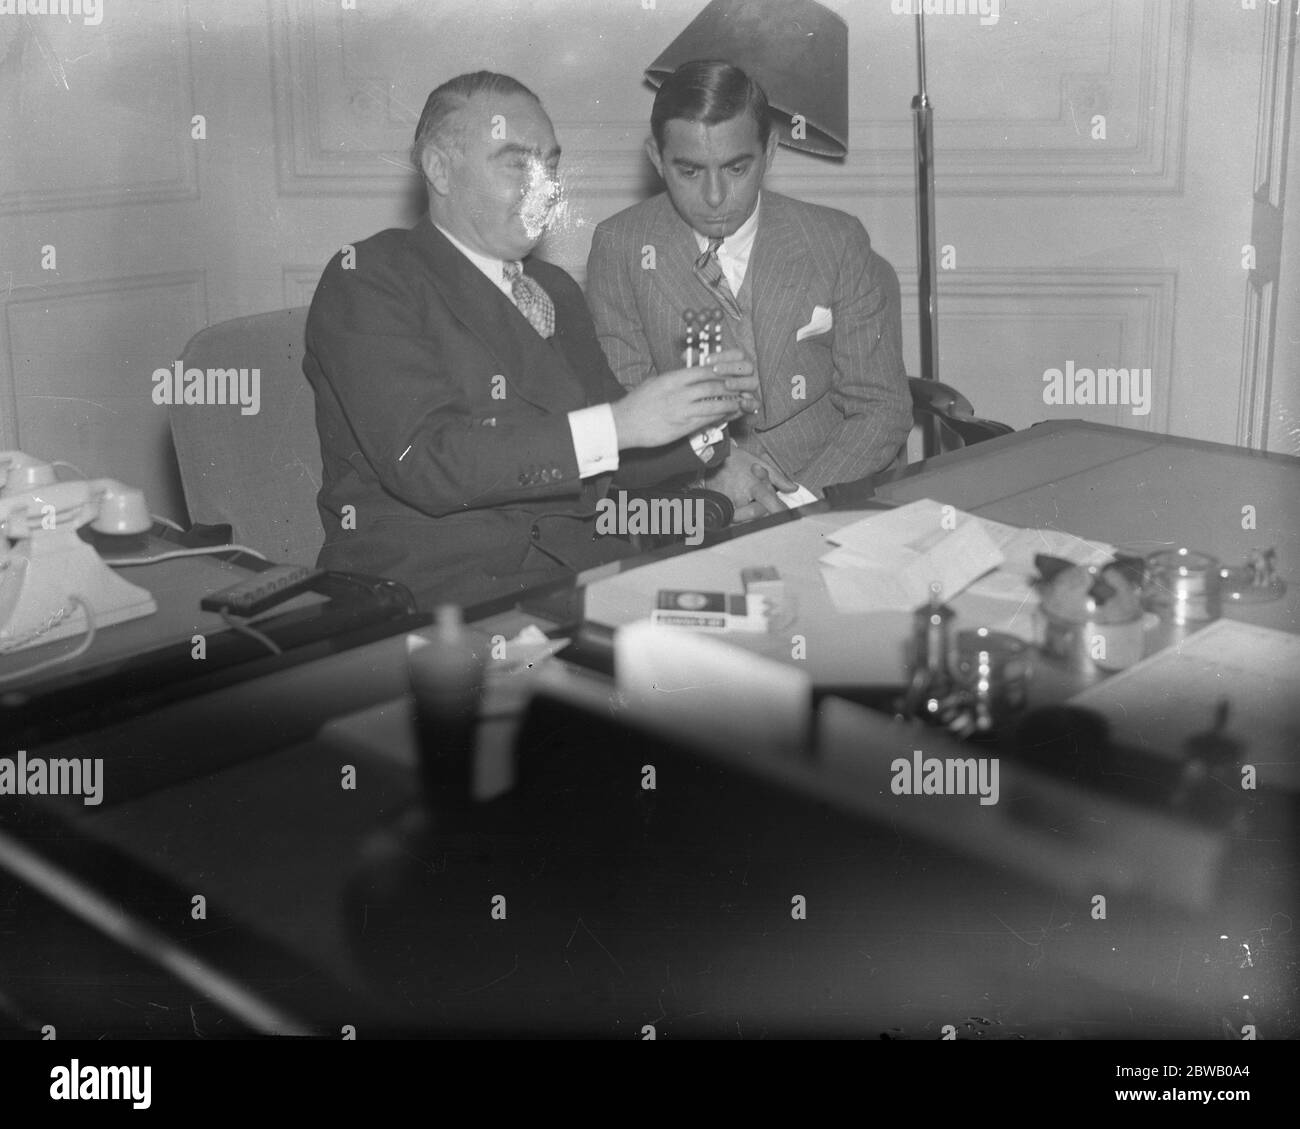 Le cinéaste américain, Eddie Cantor et M. Hore Belisha discutent de problèmes de circulation lors de la visite des stars au ministère des Transports 7 janvier 1935 Banque D'Images